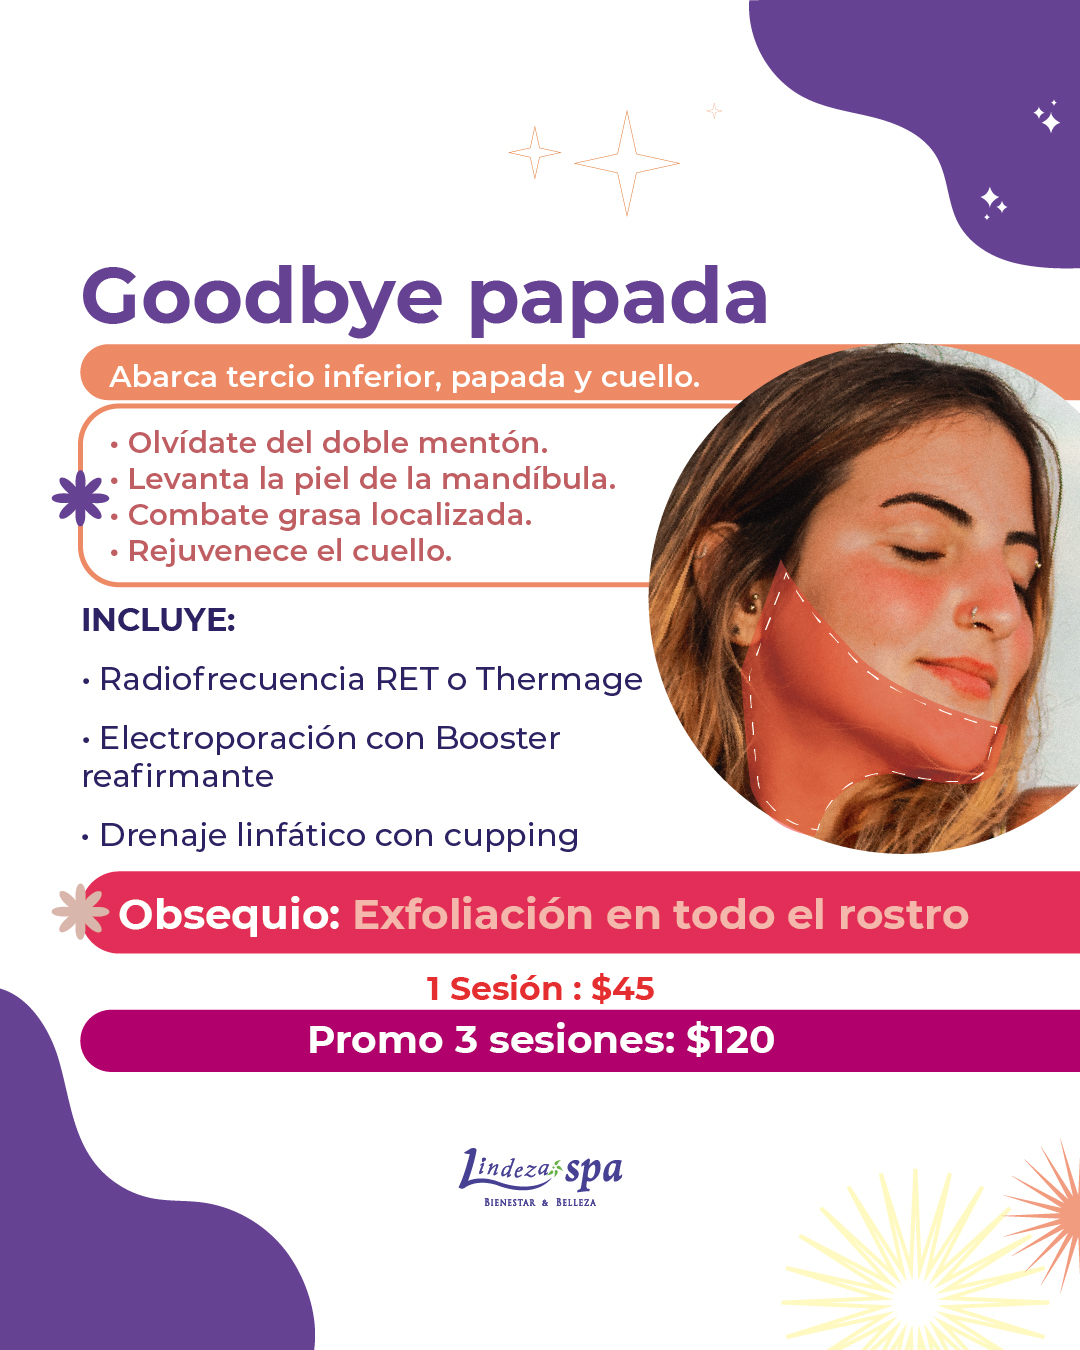 Goodbye papada, papada, estetica facial, radiofrecuencia, thermage lifting, rejuvenecimiento sin agujas, spa Guayaquil